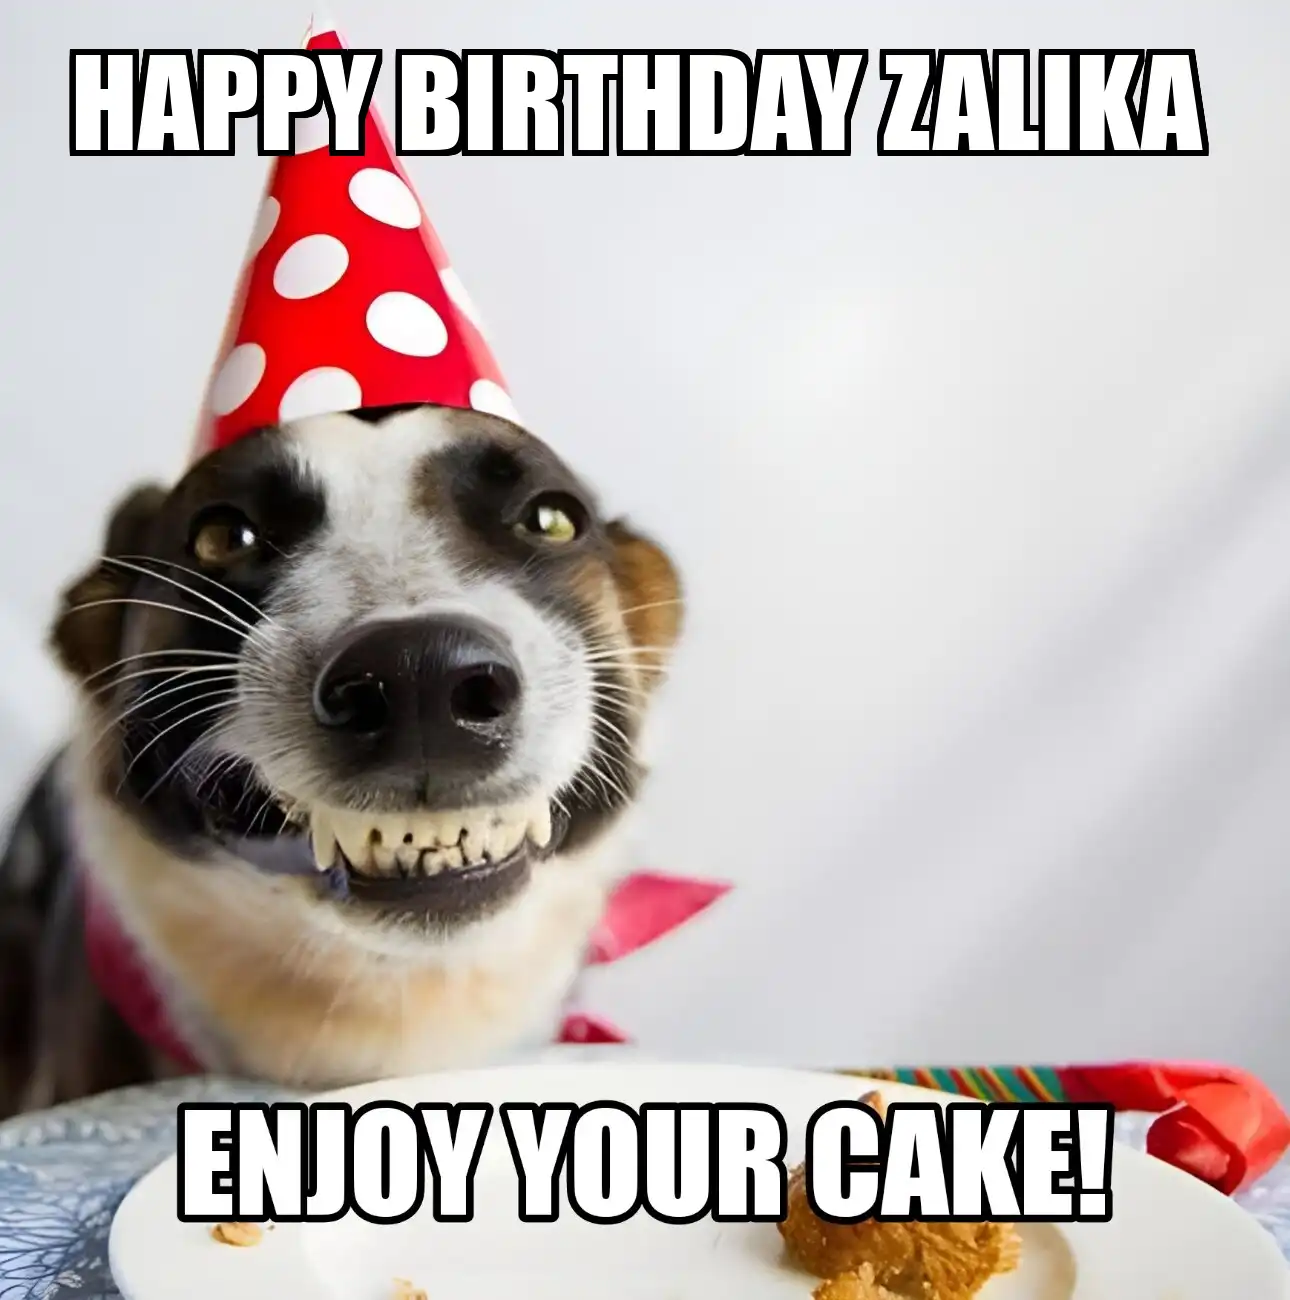 Happy Birthday Zalika Enjoy Your Cake Dog Meme